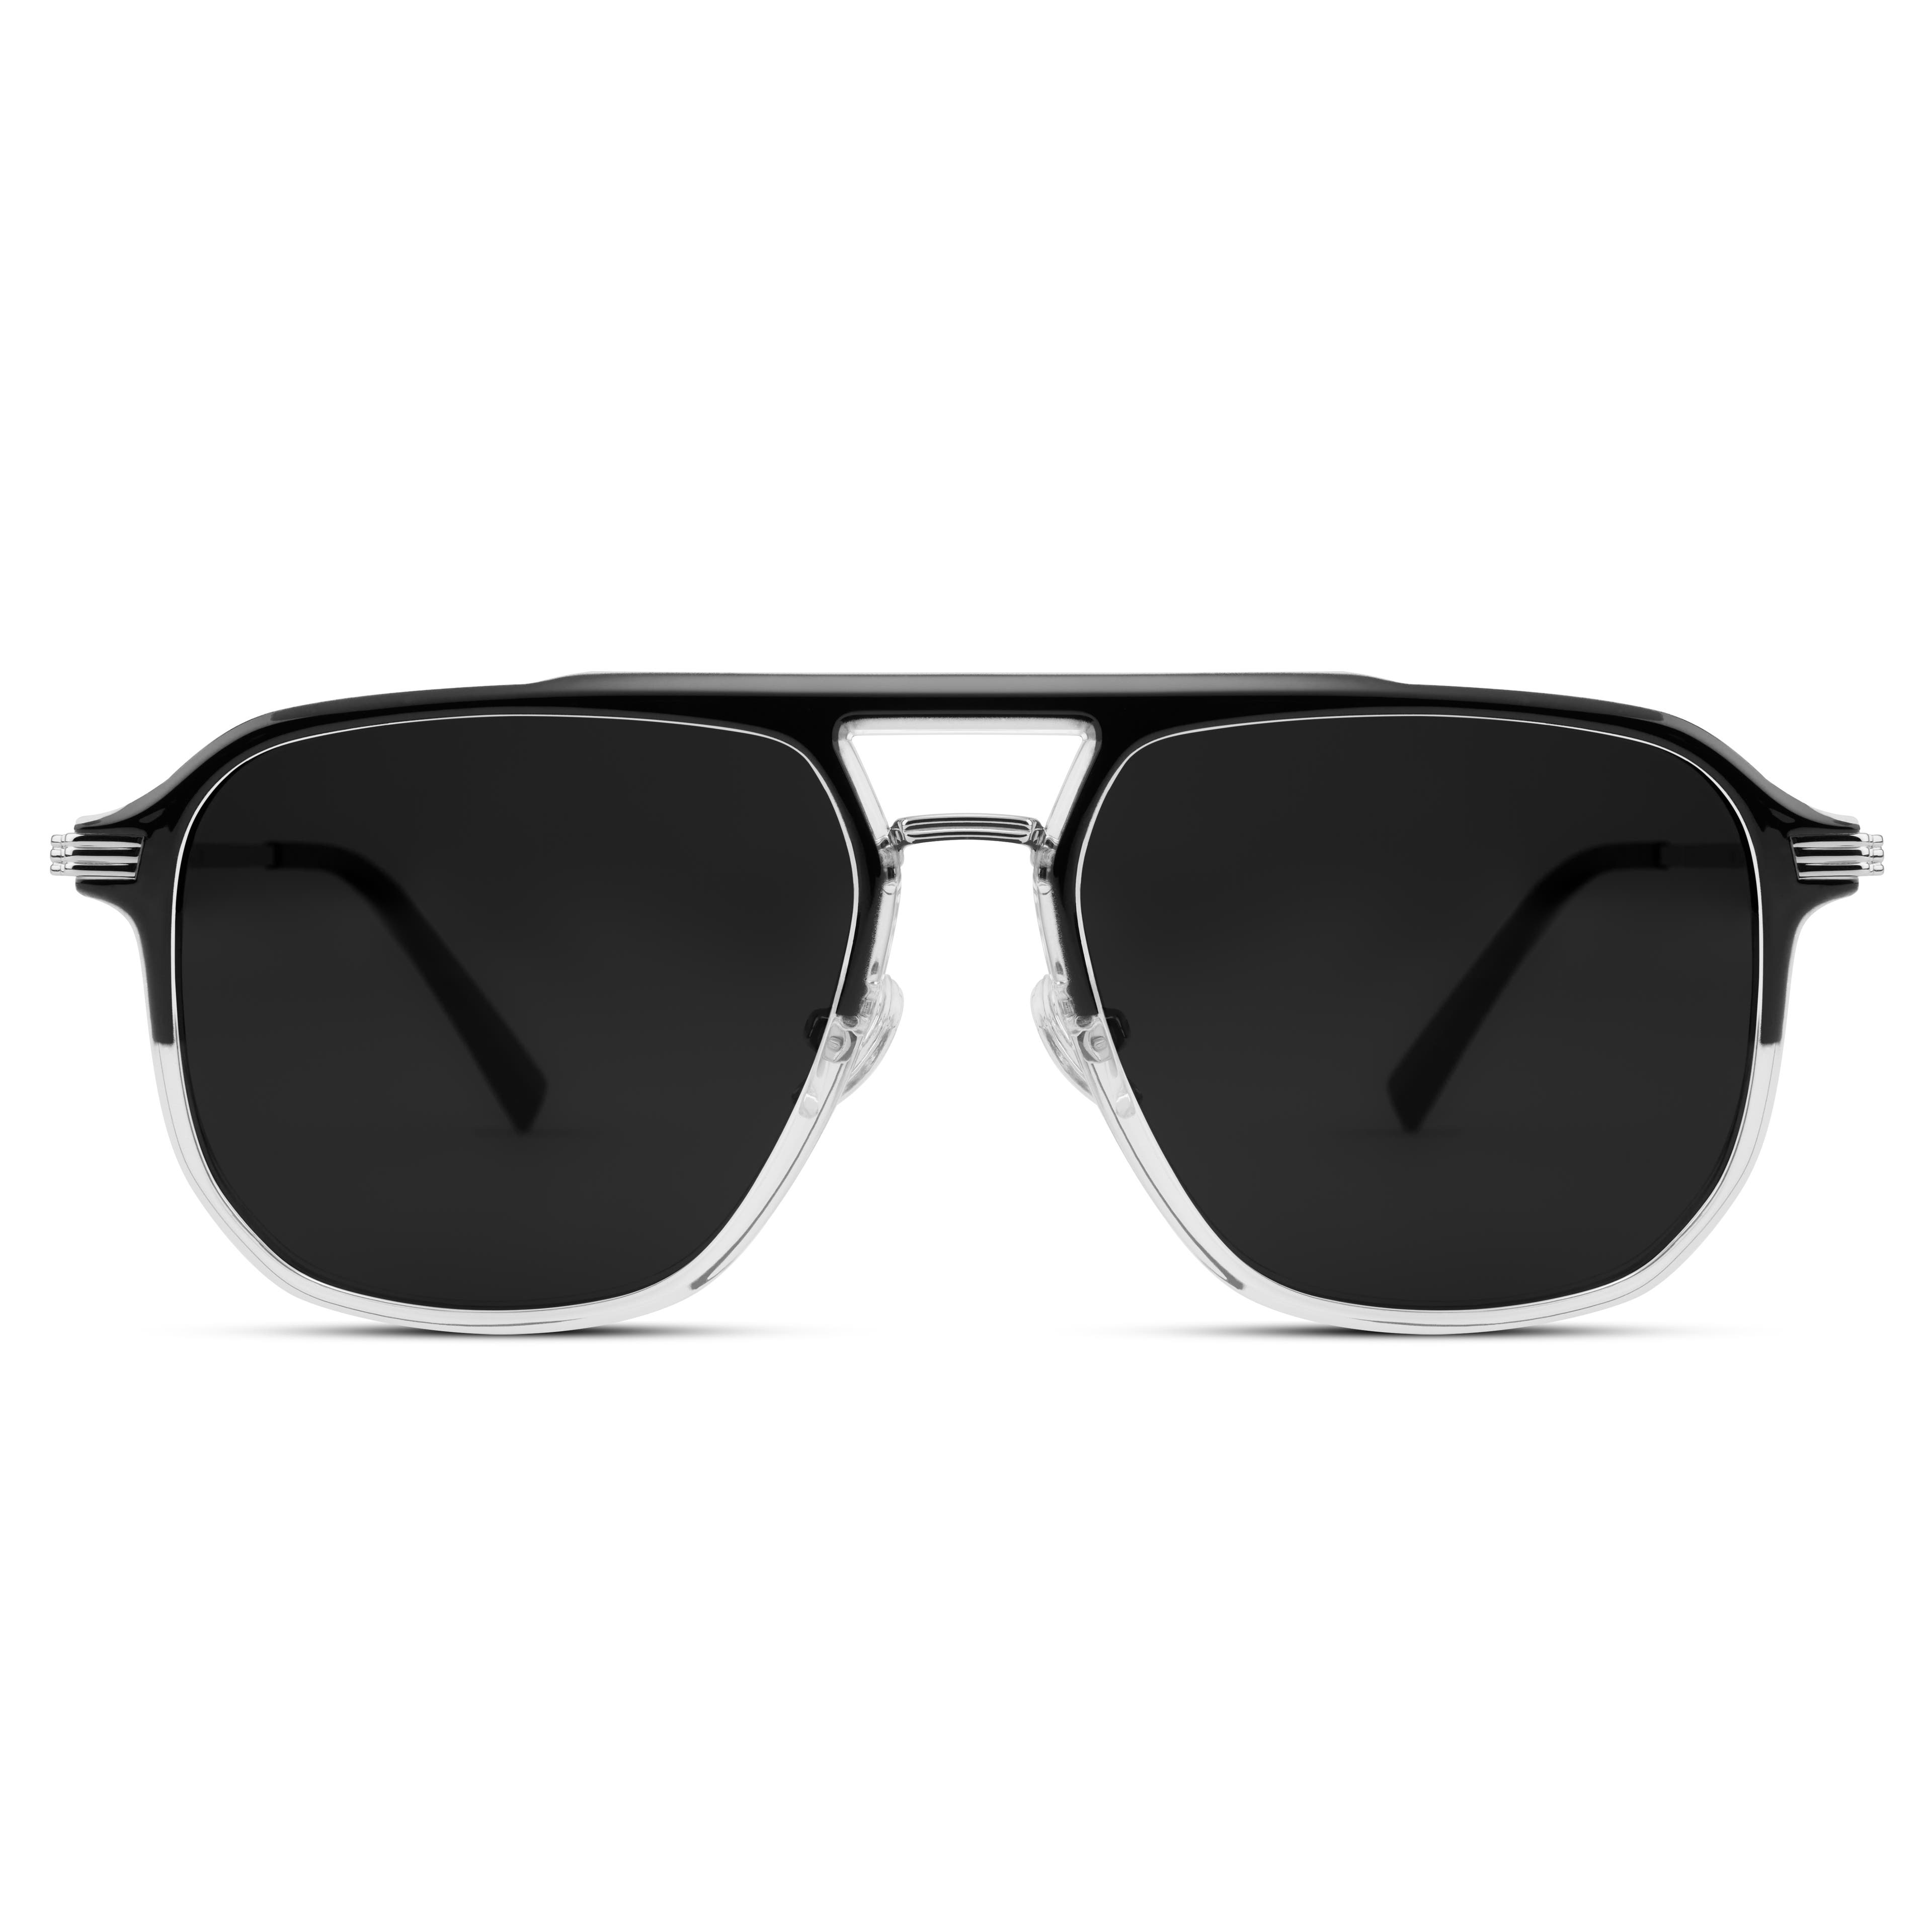 Occasus | Слънчеви очила с черно-прозрачни рамки, двоен мост и тъмни поляризирани стъкла